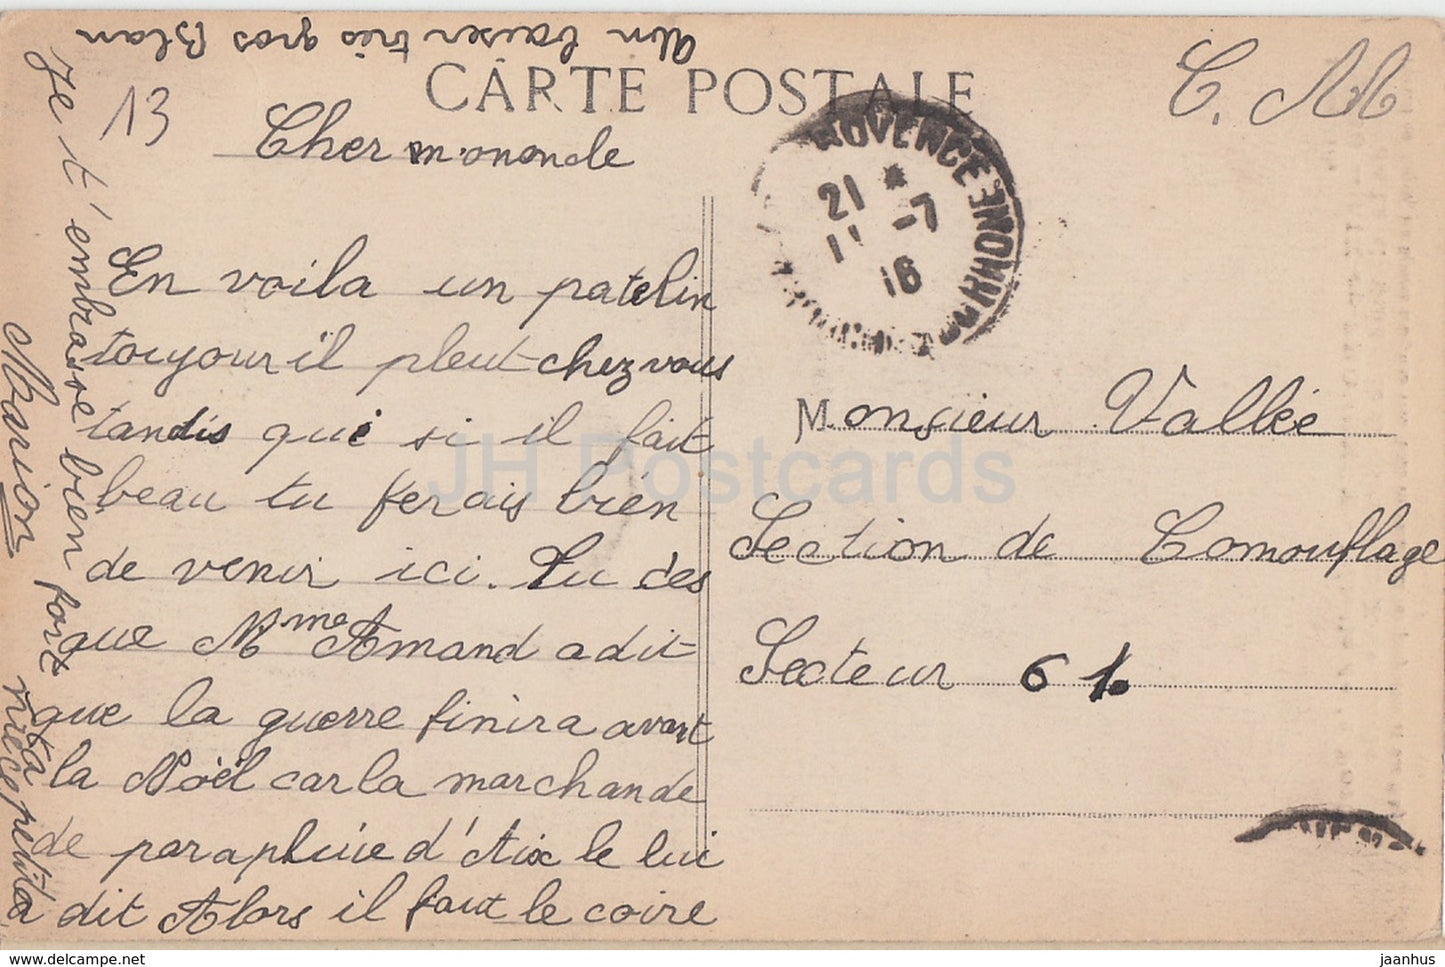 Aix en Provence - Détails de la Porte de la Cathédrale St Sauveur - 2490 - carte postale ancienne - 1916 - France - occasion